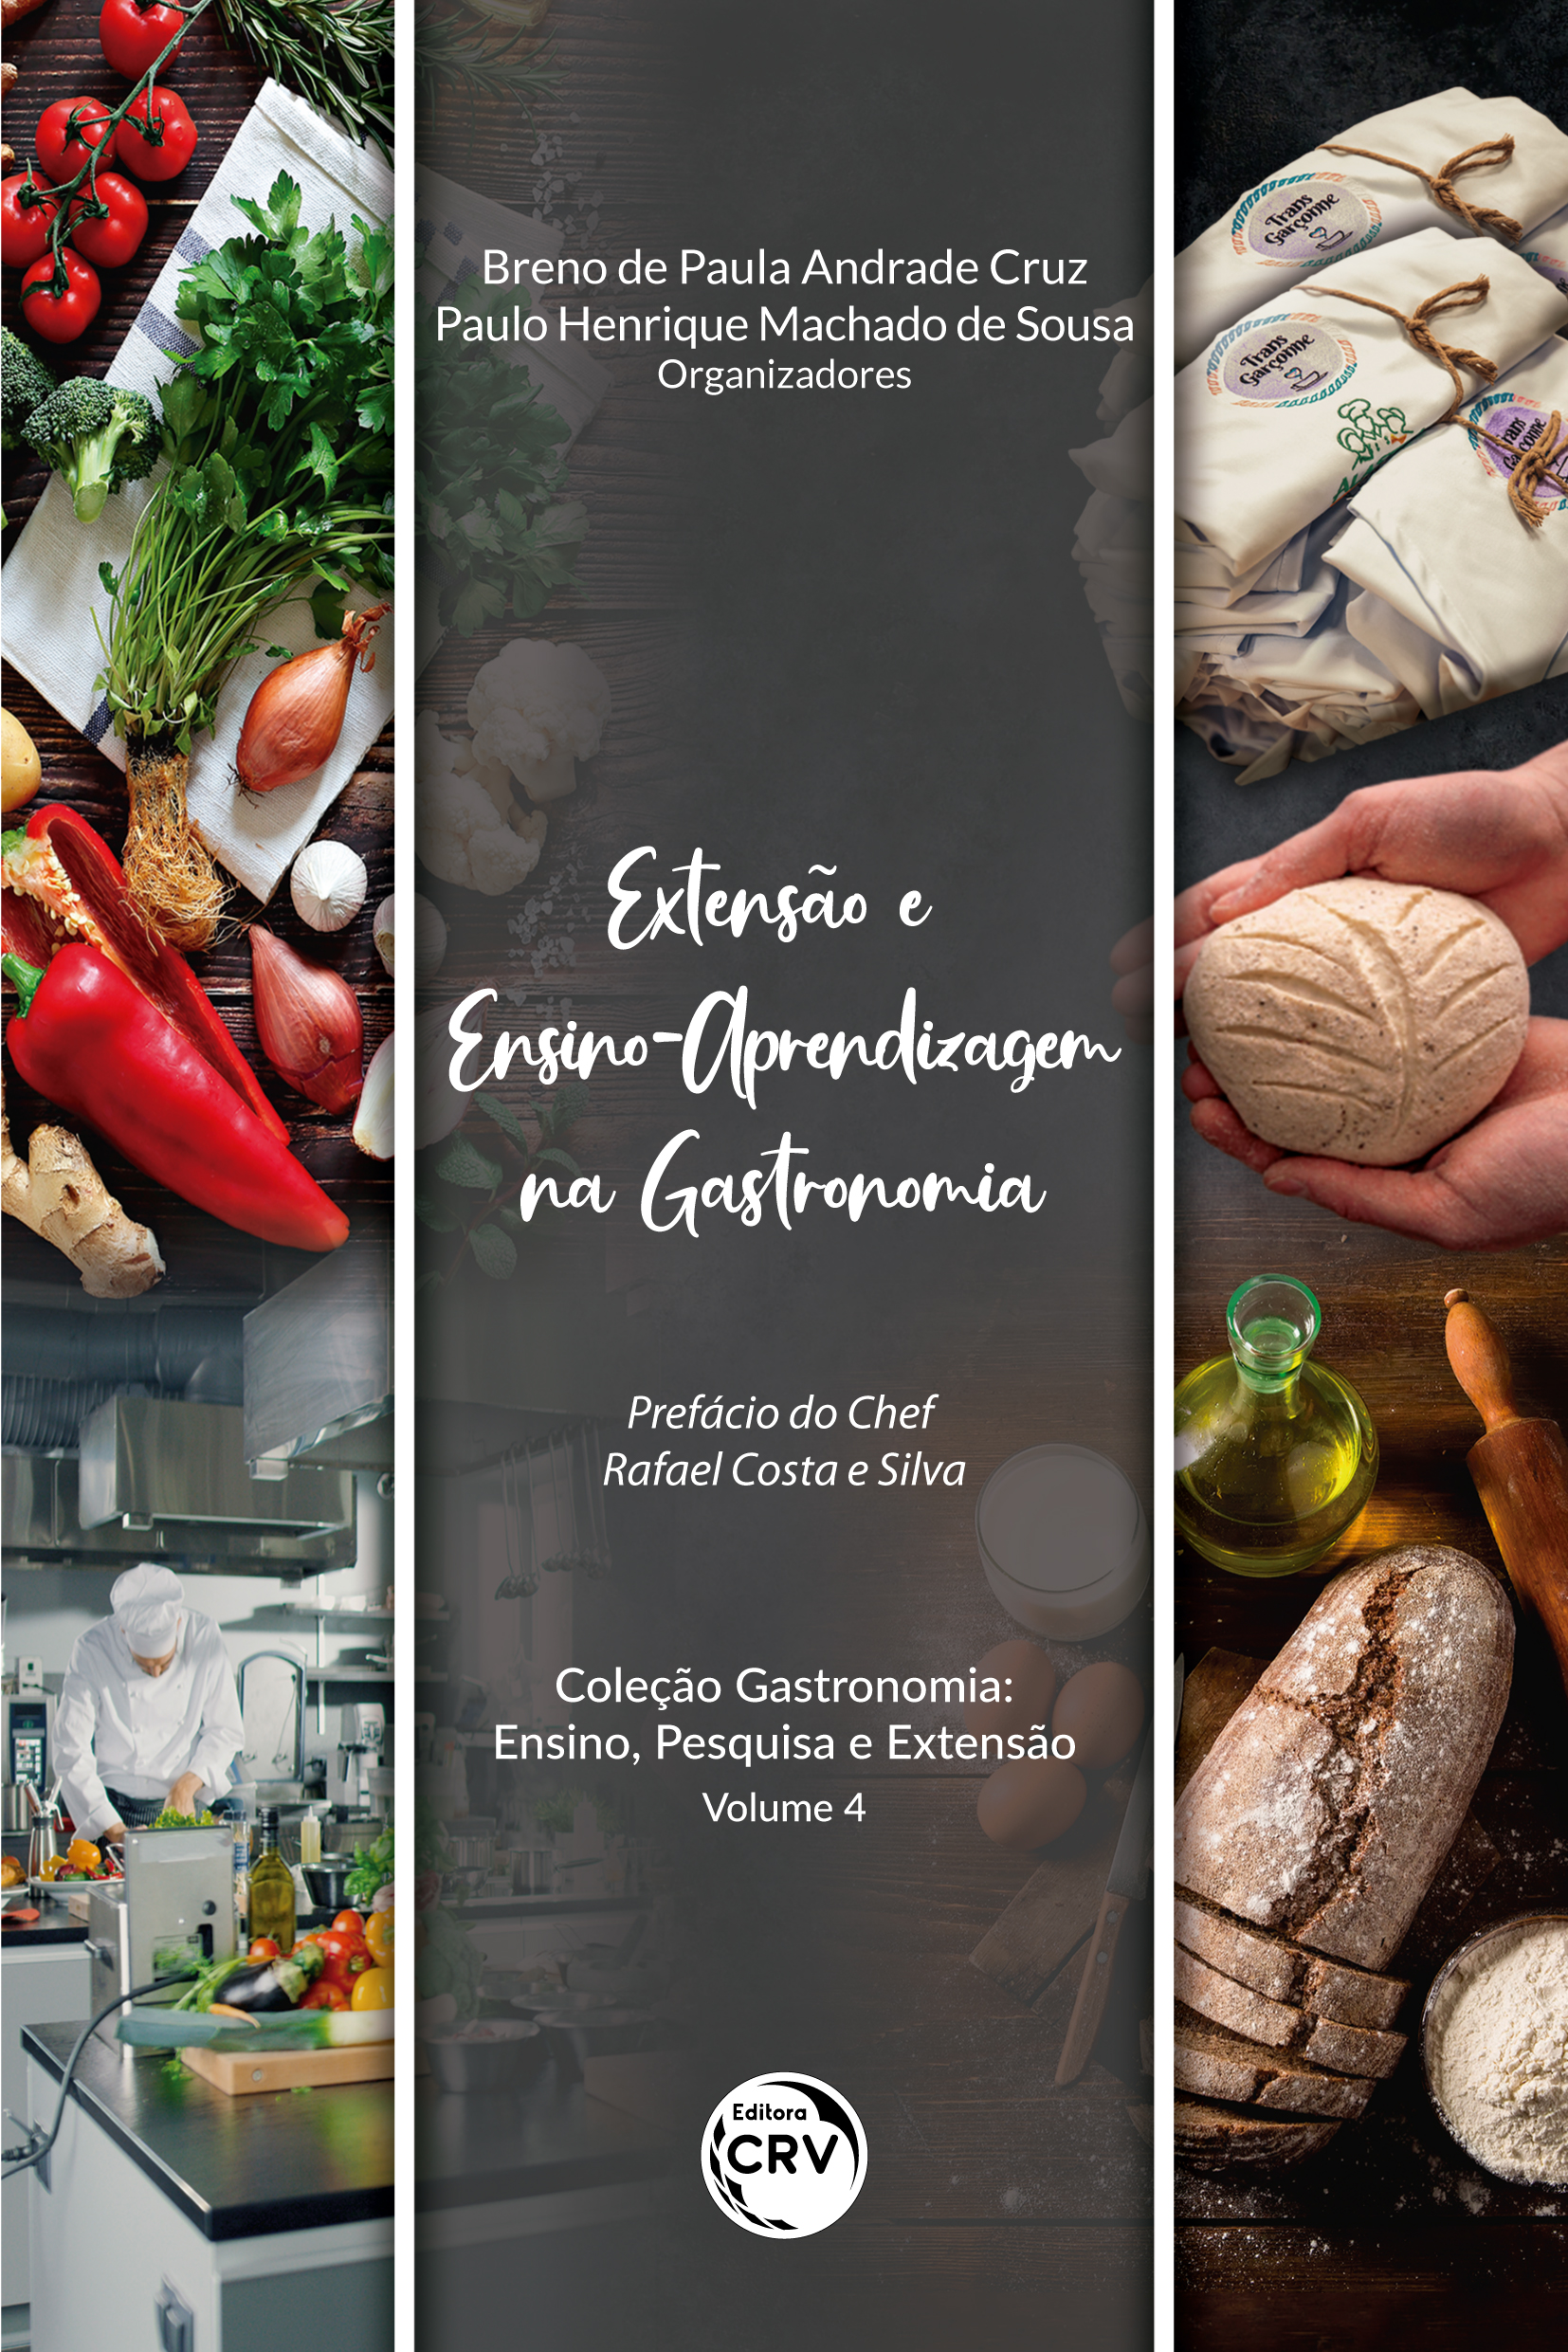 EXTENSÃO E ENSINO-APRENDIZAGEM NA GASTRONOMIA<br> Coleção Gastronomia: Ensino, Pesquisa e Extensão<br> Volume 4